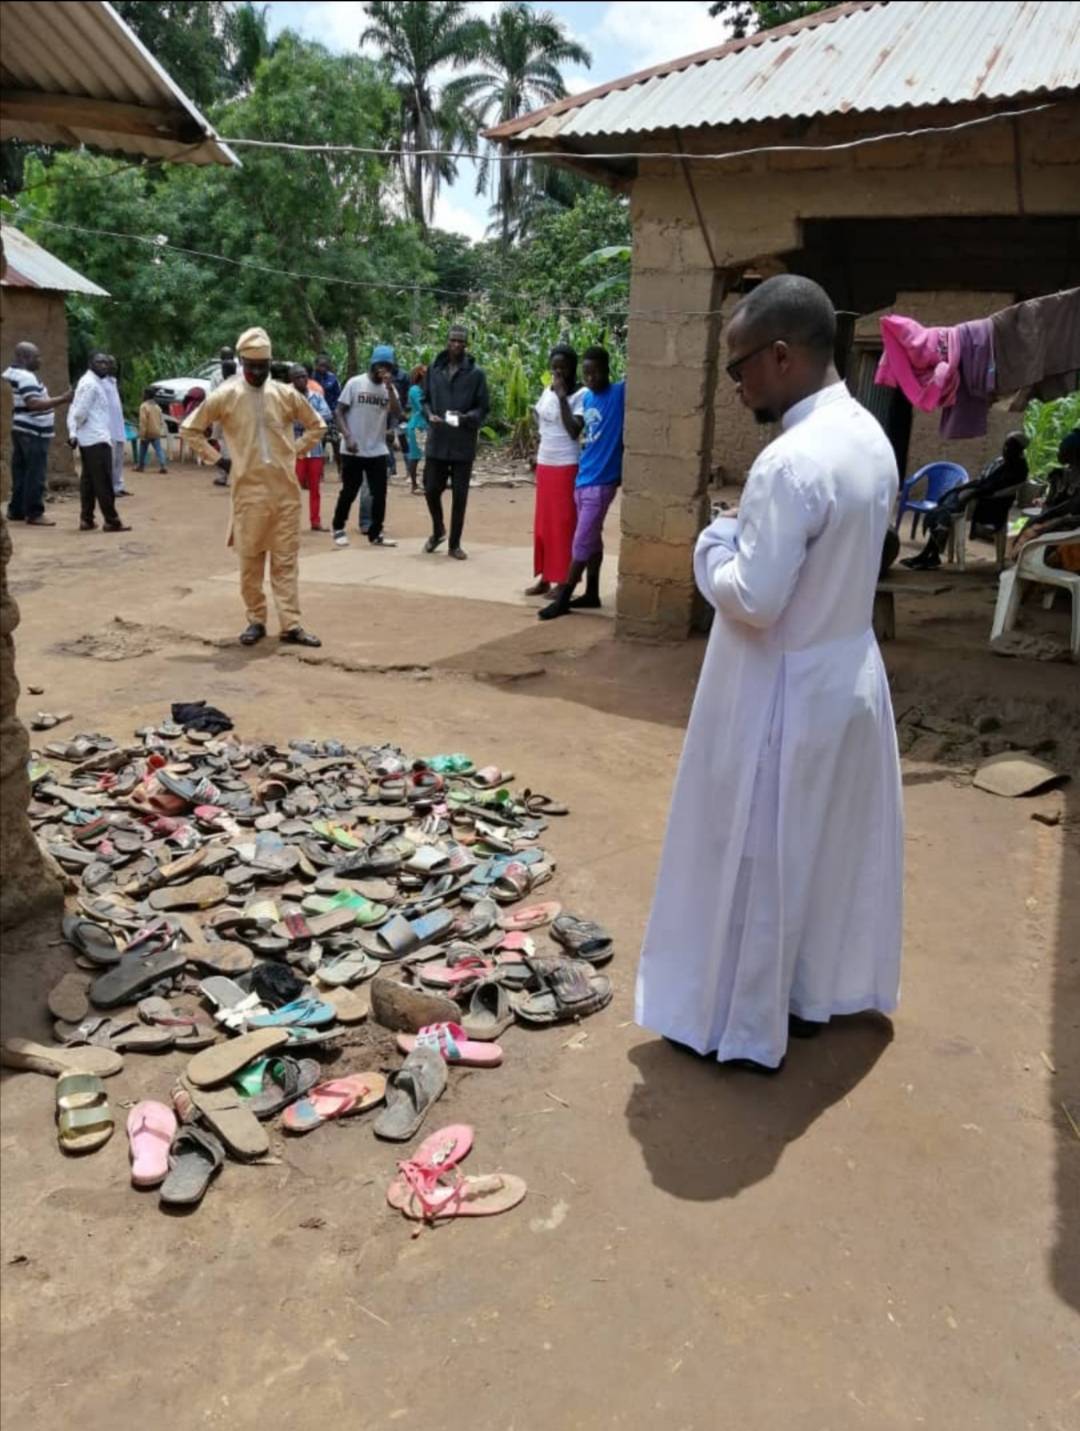 “Los cristianos temen por sus vidas”, dice sacerdote nigeriano